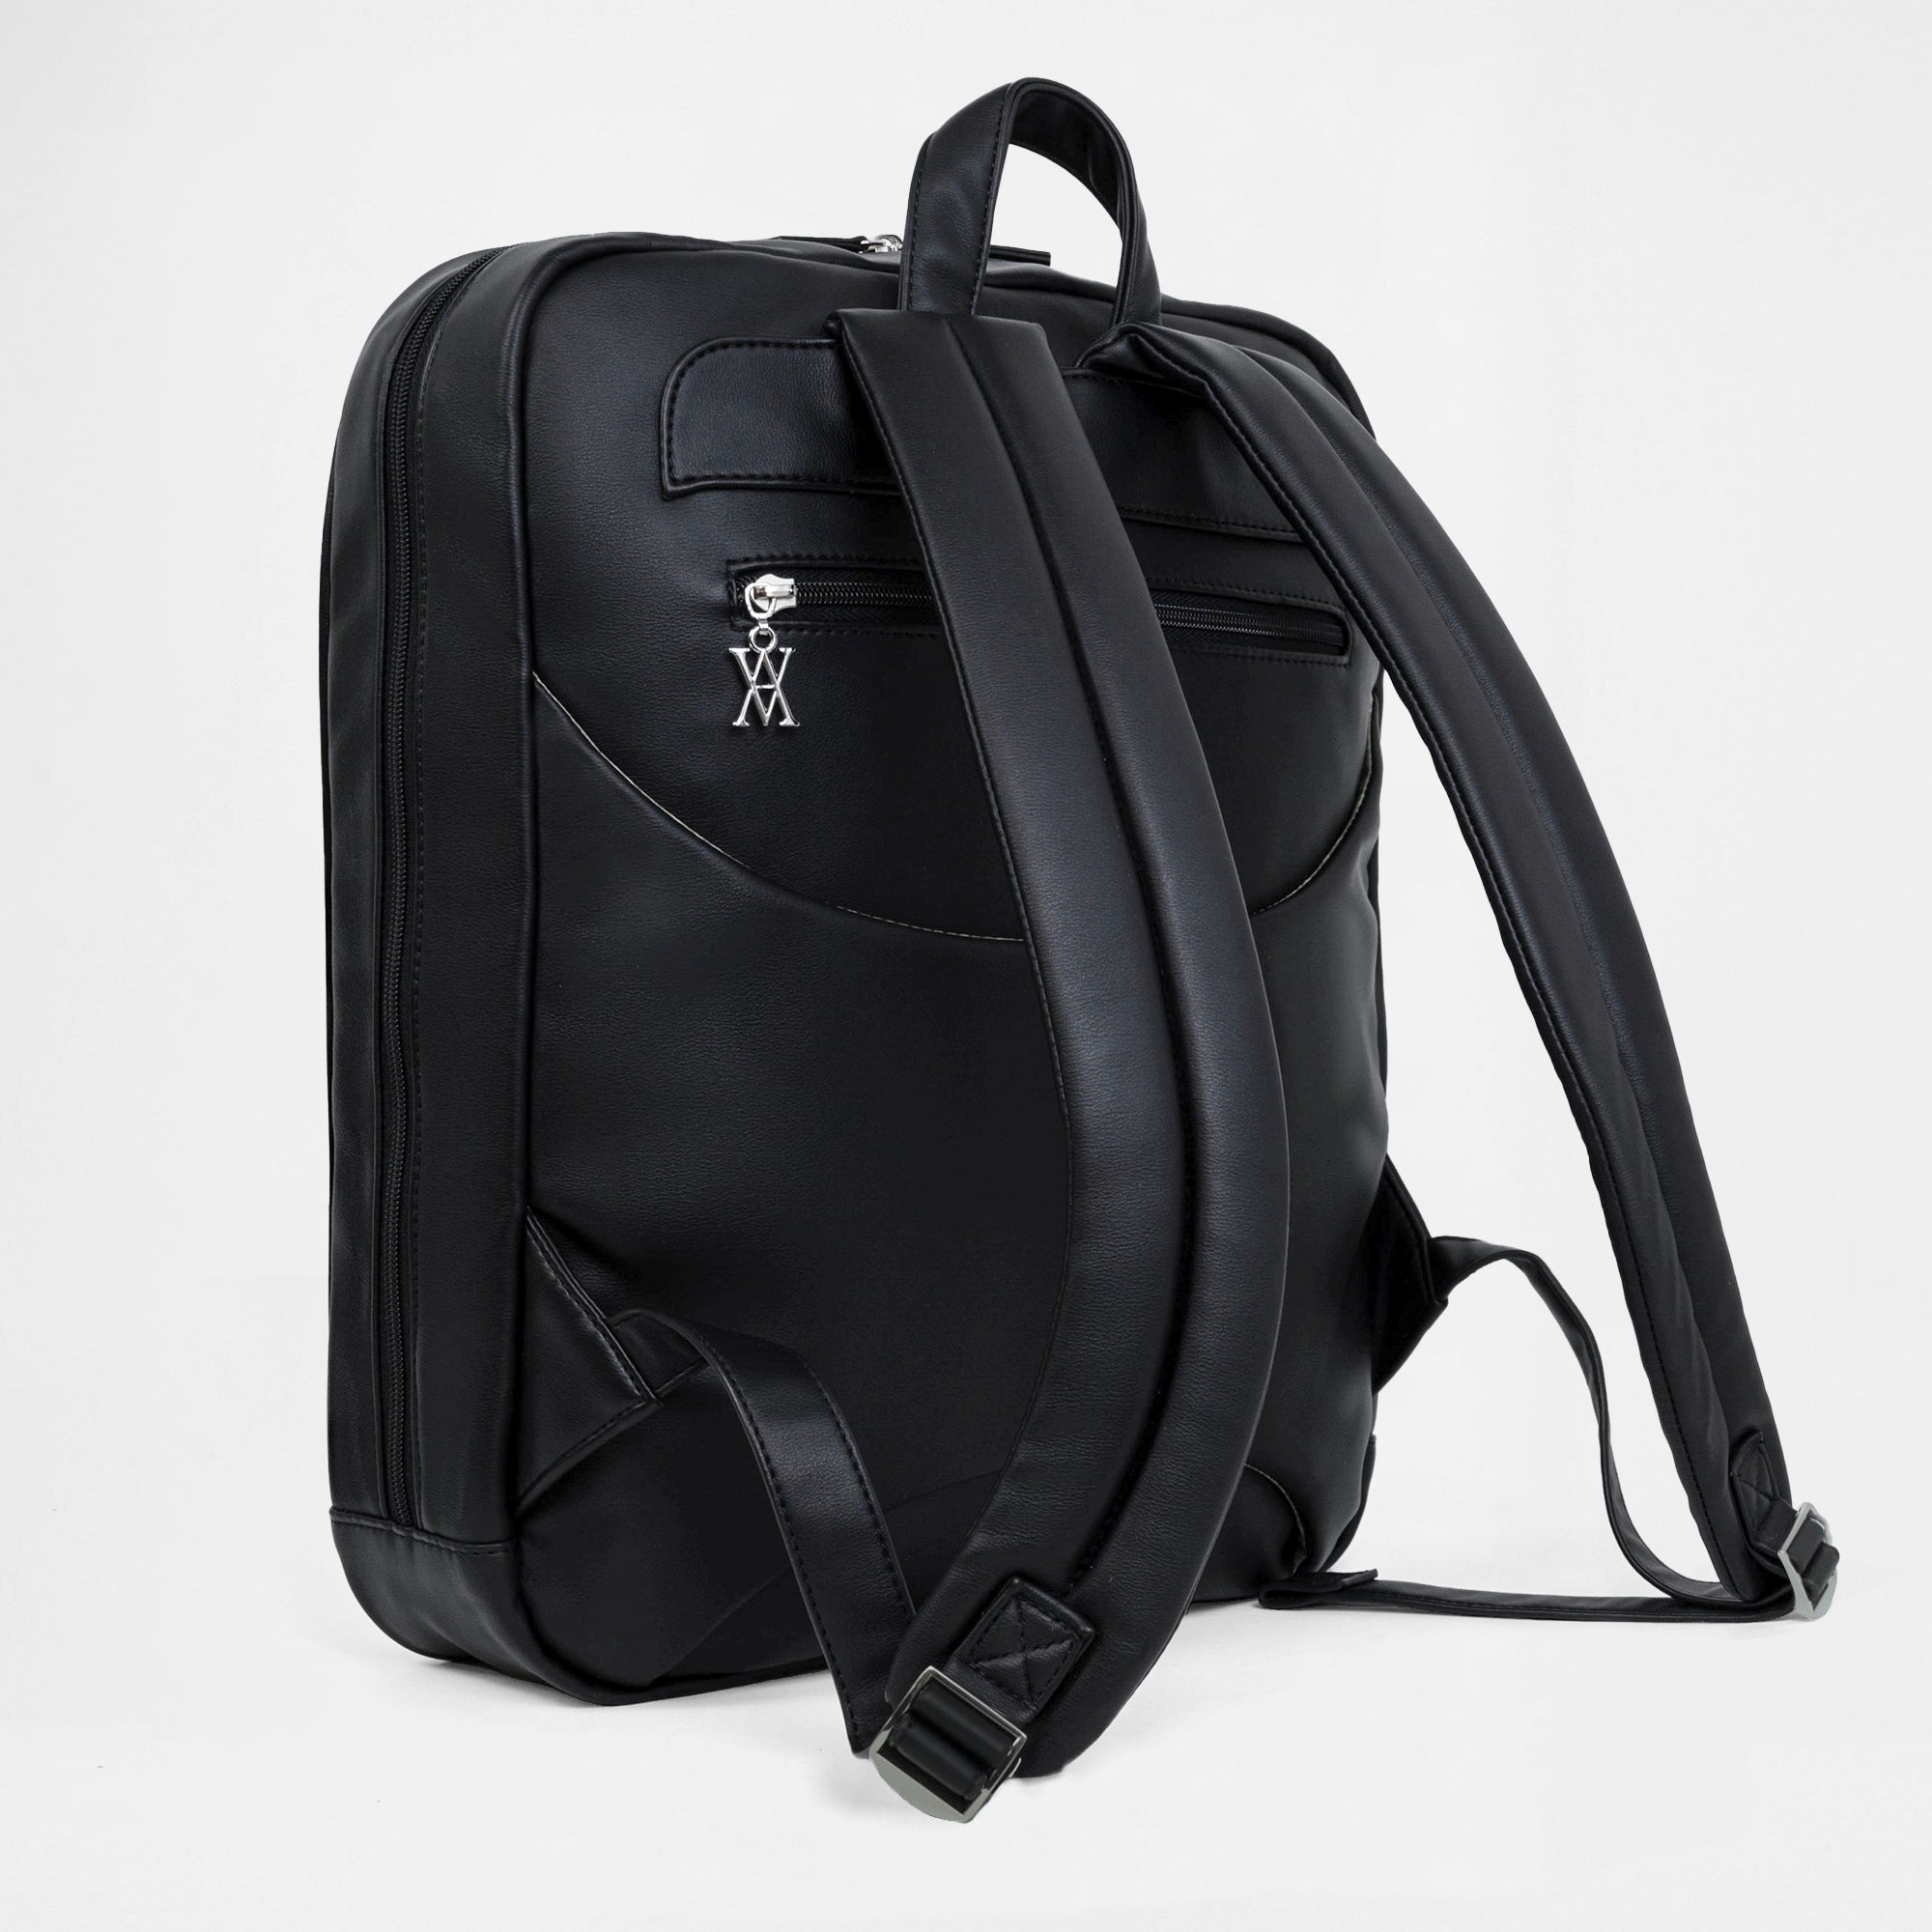 Cali Laptop Backpack - Black